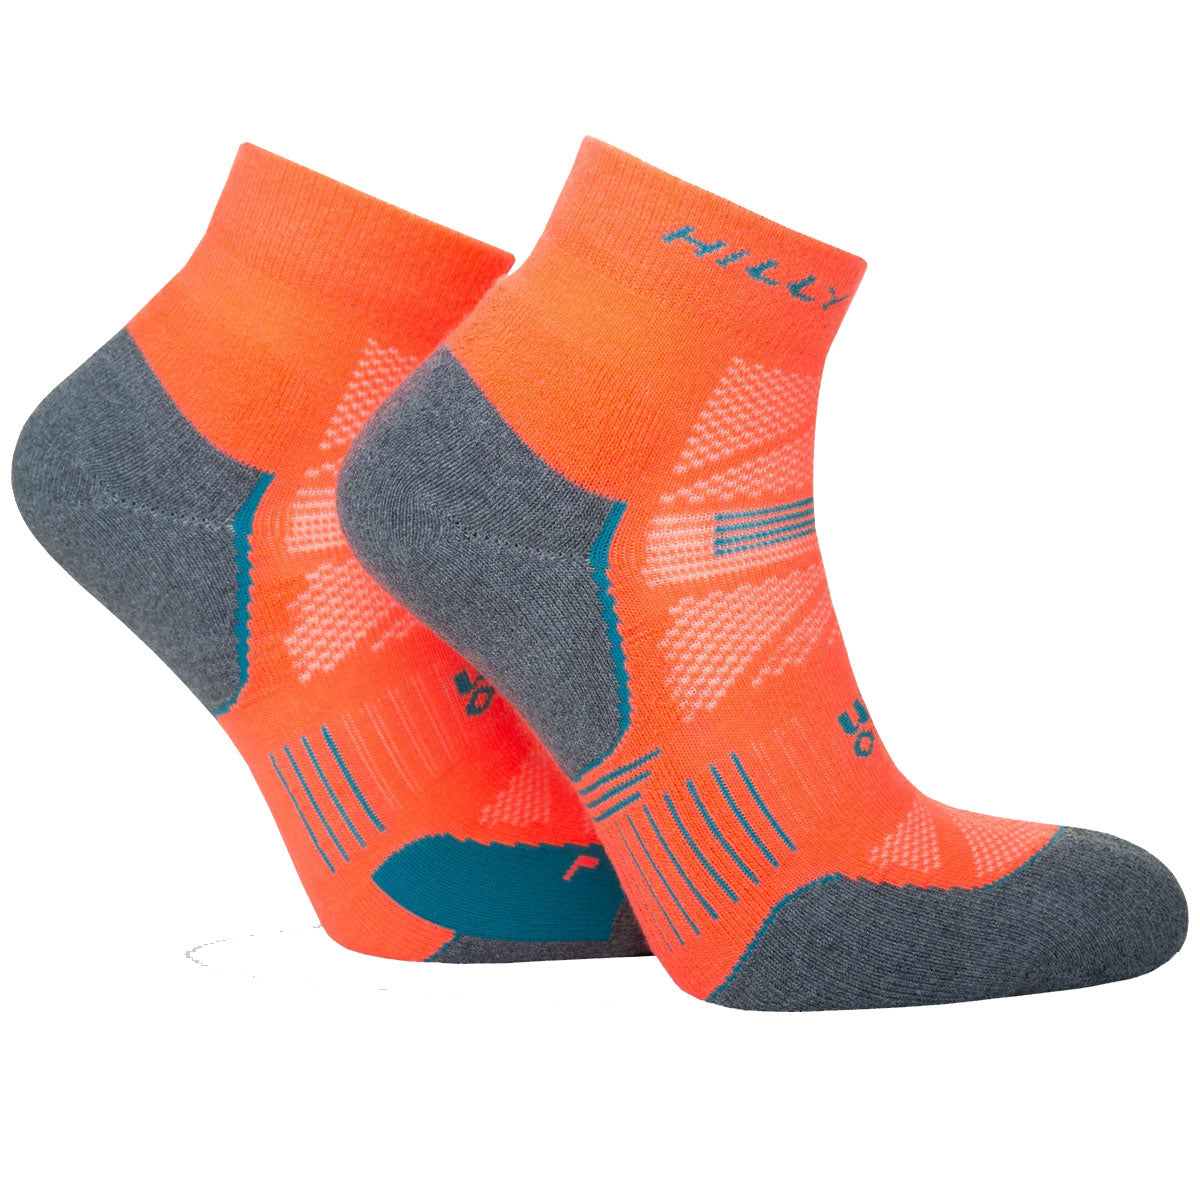 Hilly Supreme Anklet Med Socks - Mens - Neon Candy/Grey Marl